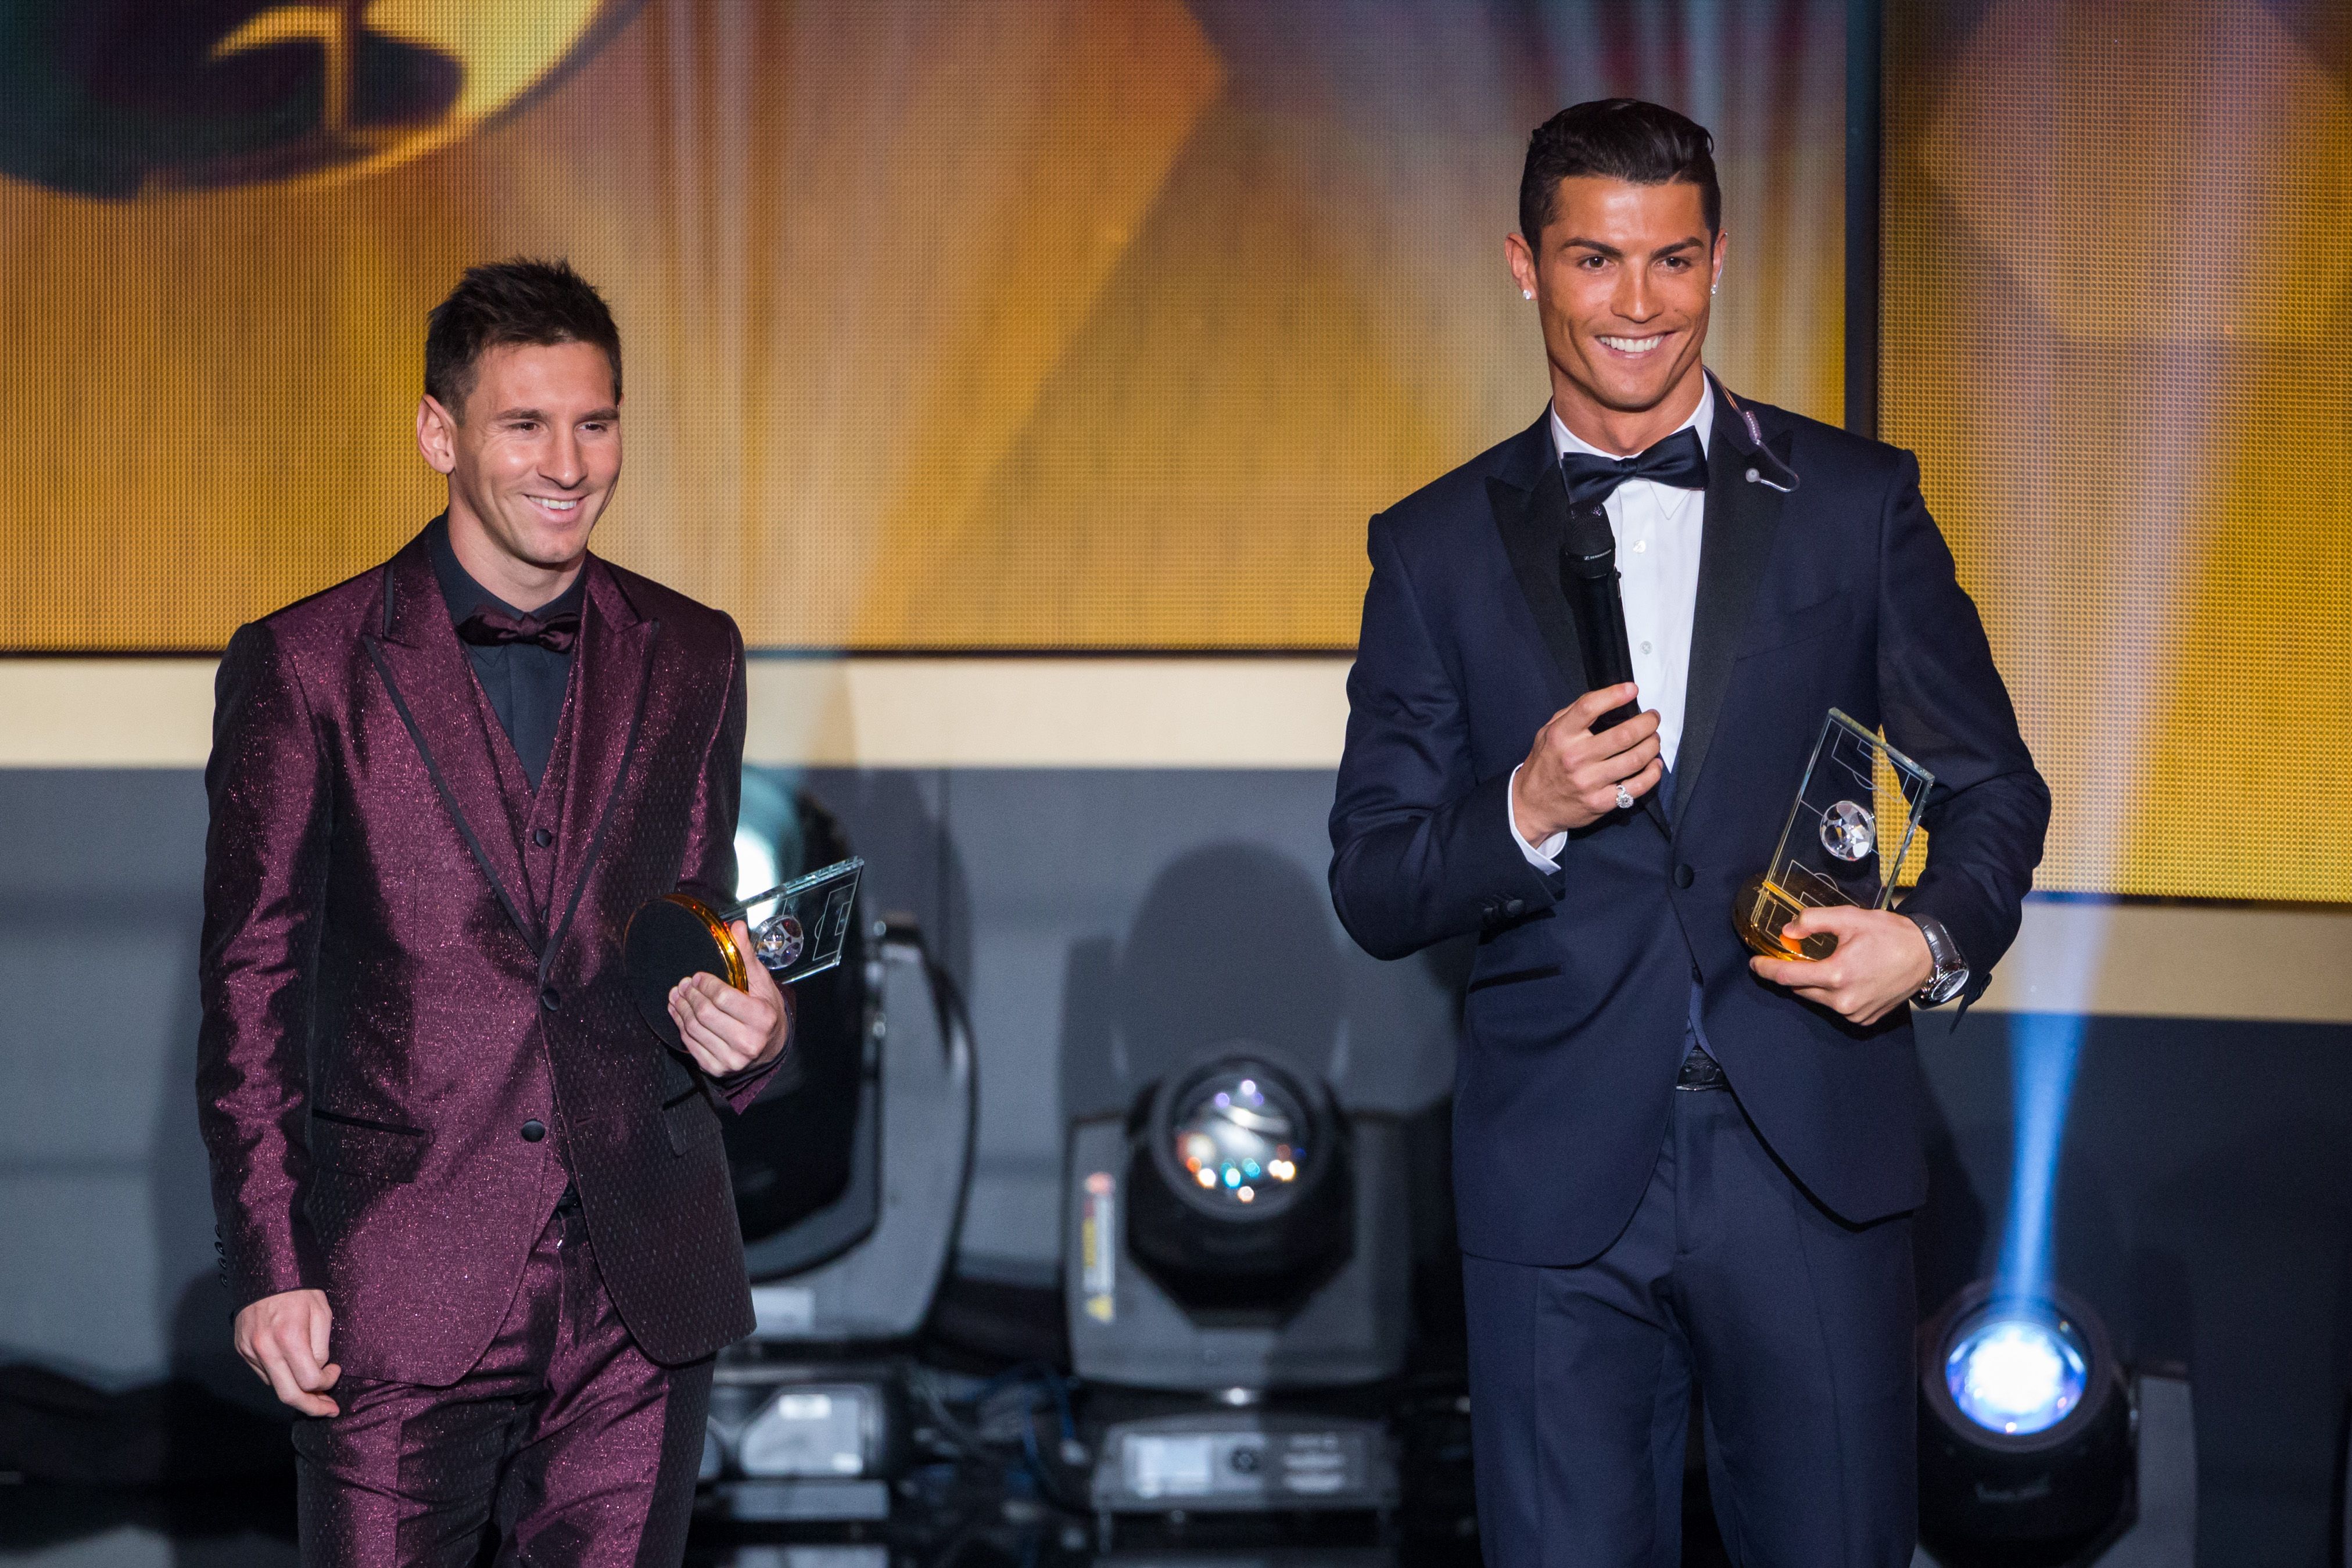 Lionel Messi &amp; Cristiano Ronaldo at the Ballon d'Or ceremony